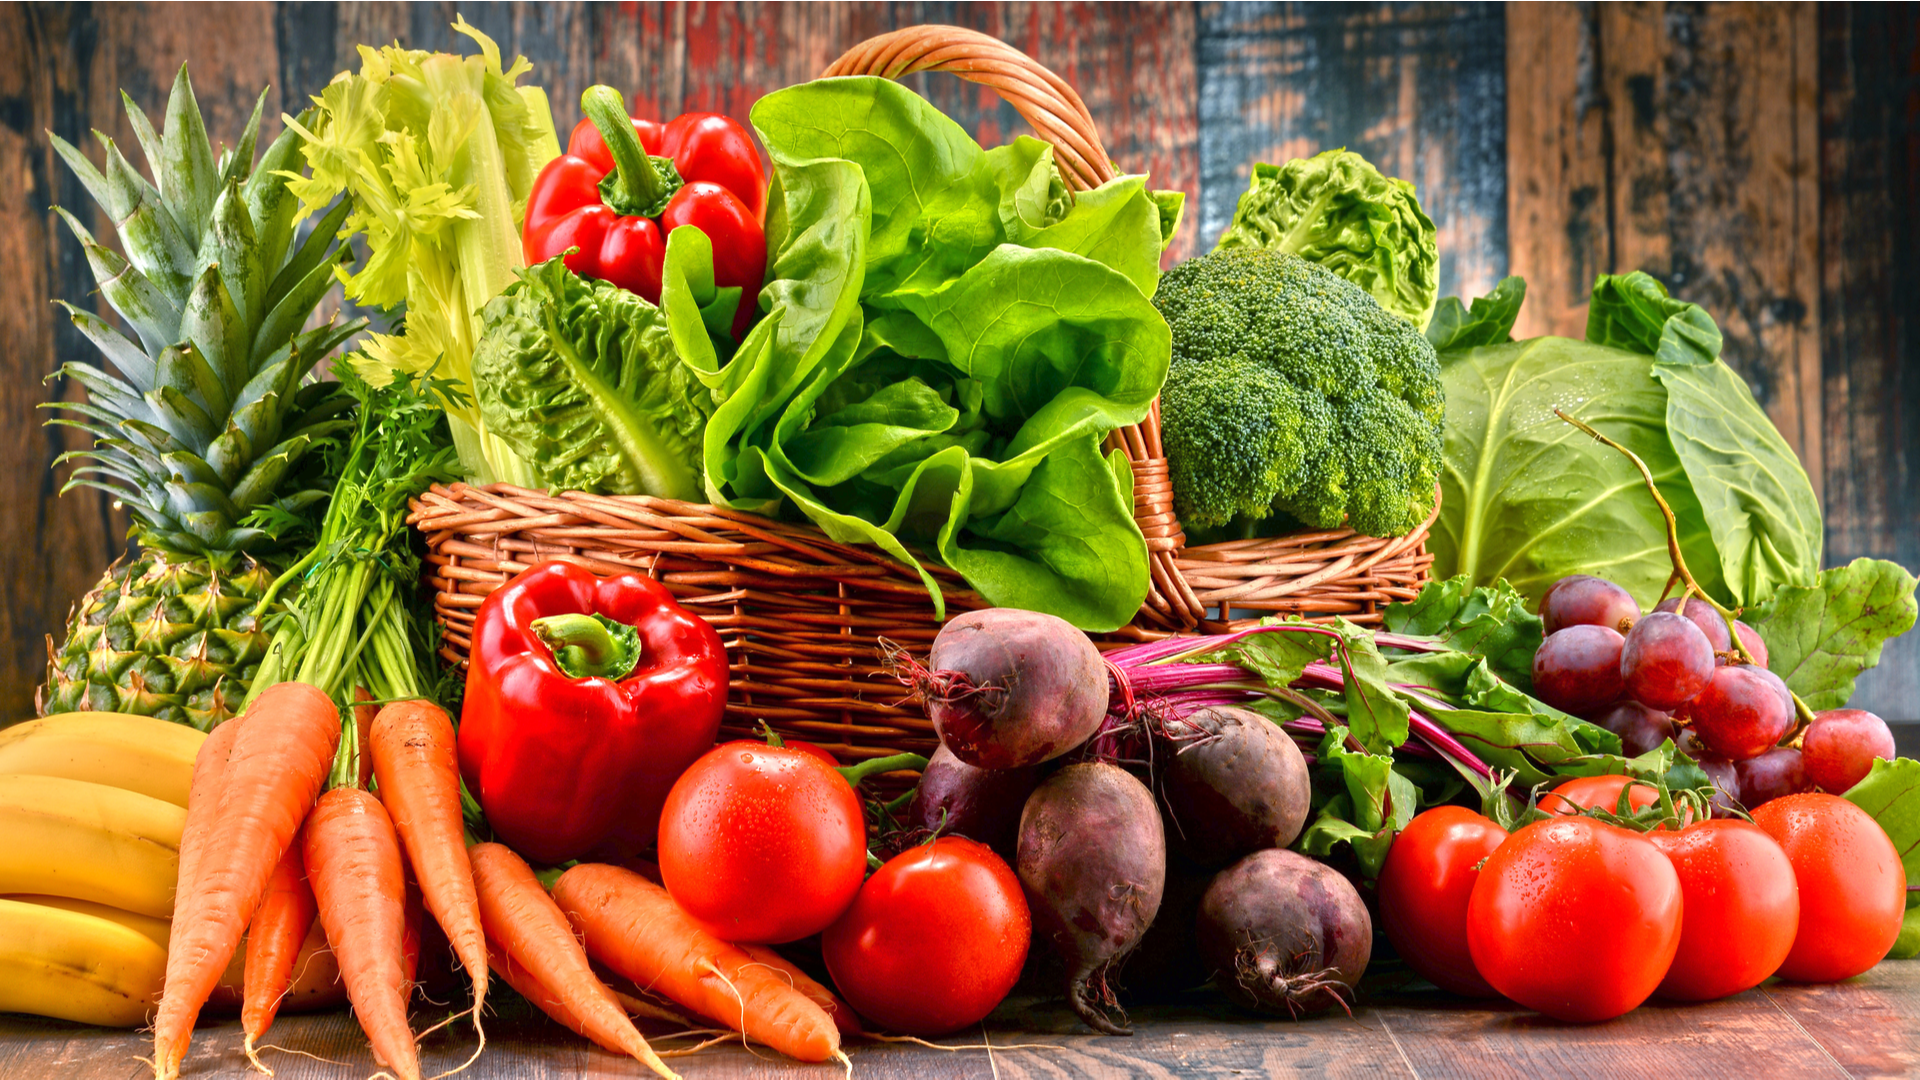 Only vegetable. Продукты овощи. Свежие овощи и фрукты. Красивые овощи. Овощи фрукты зелень.